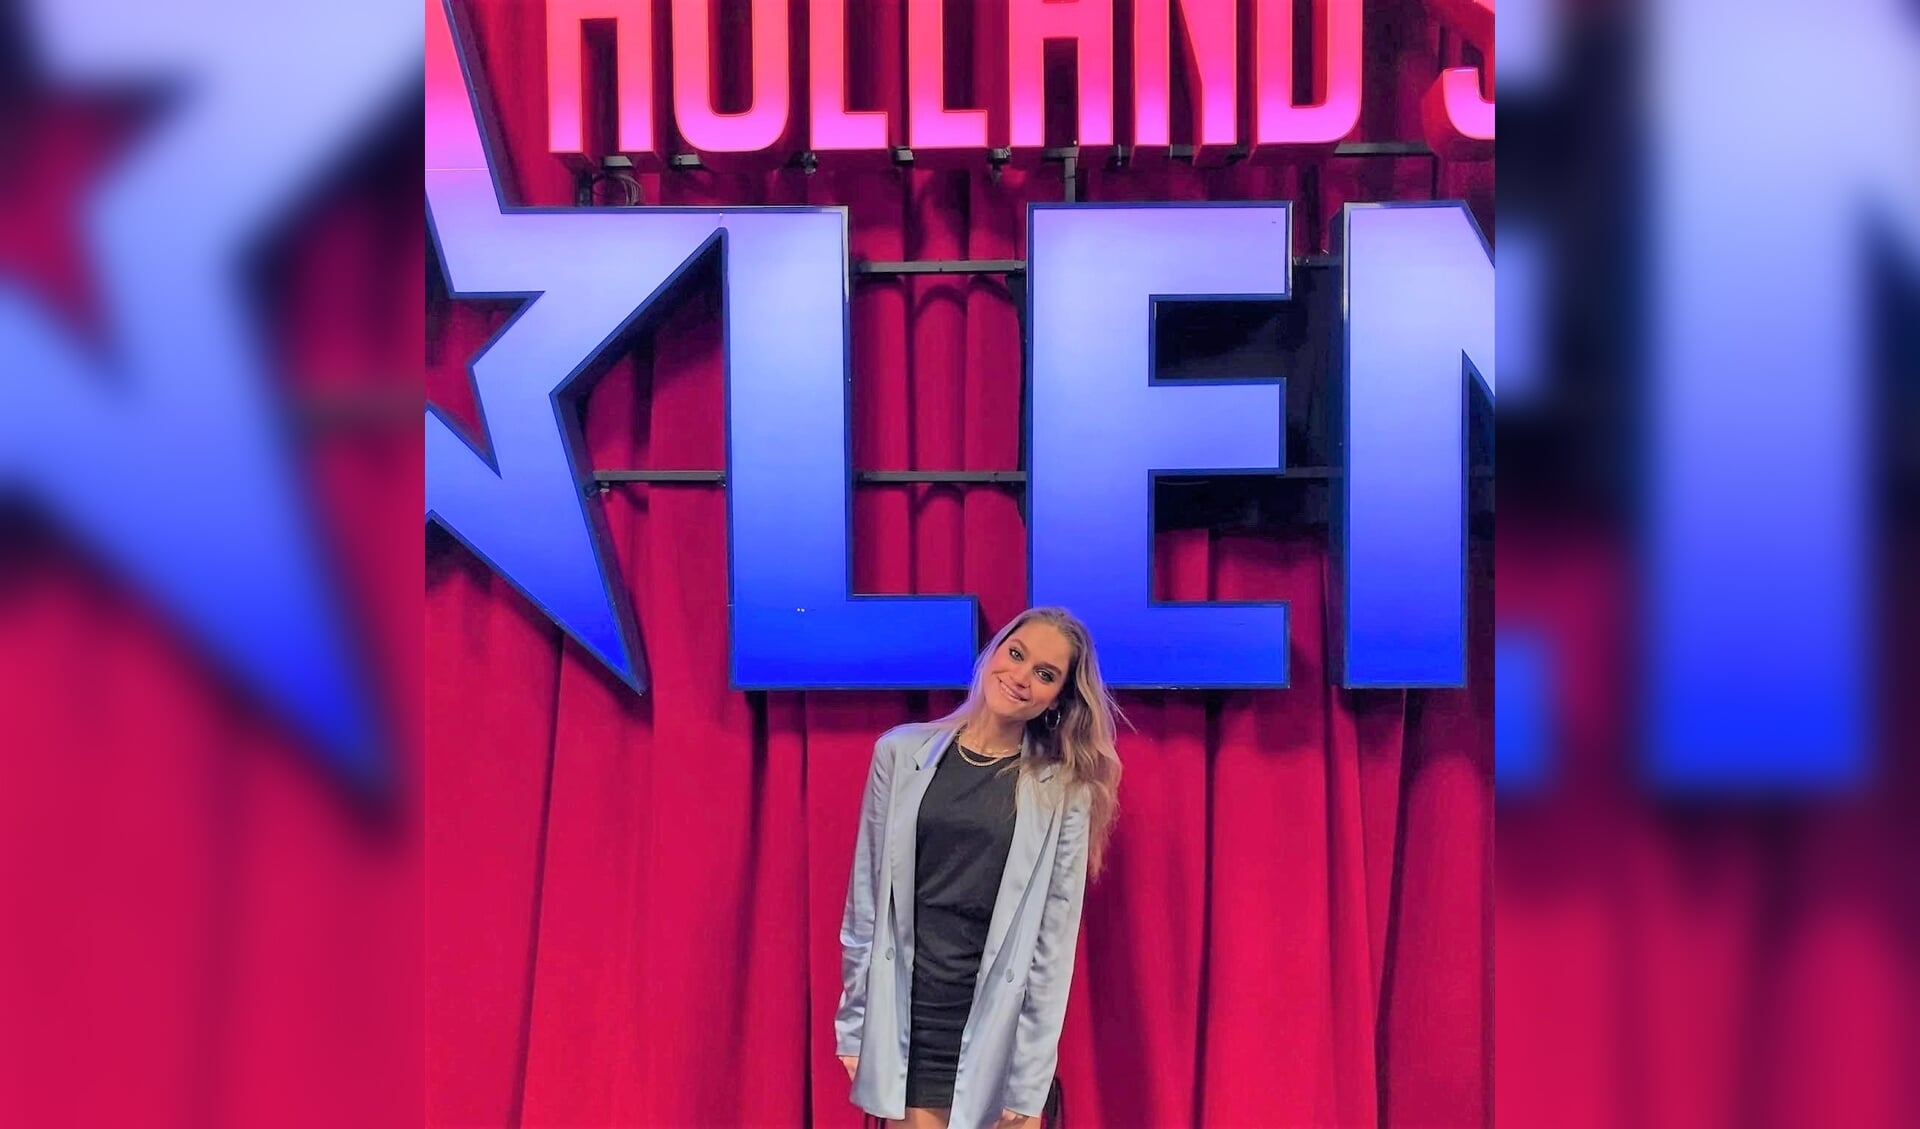 De achttienjarige Emmelie du Puy was afgelopen vrijdag op televisie met haar auditie voor de talentenshow 'Hollands Got Talent'. Met succes, want ze is met lovend jurycommentaar door naar de volgende ronde.